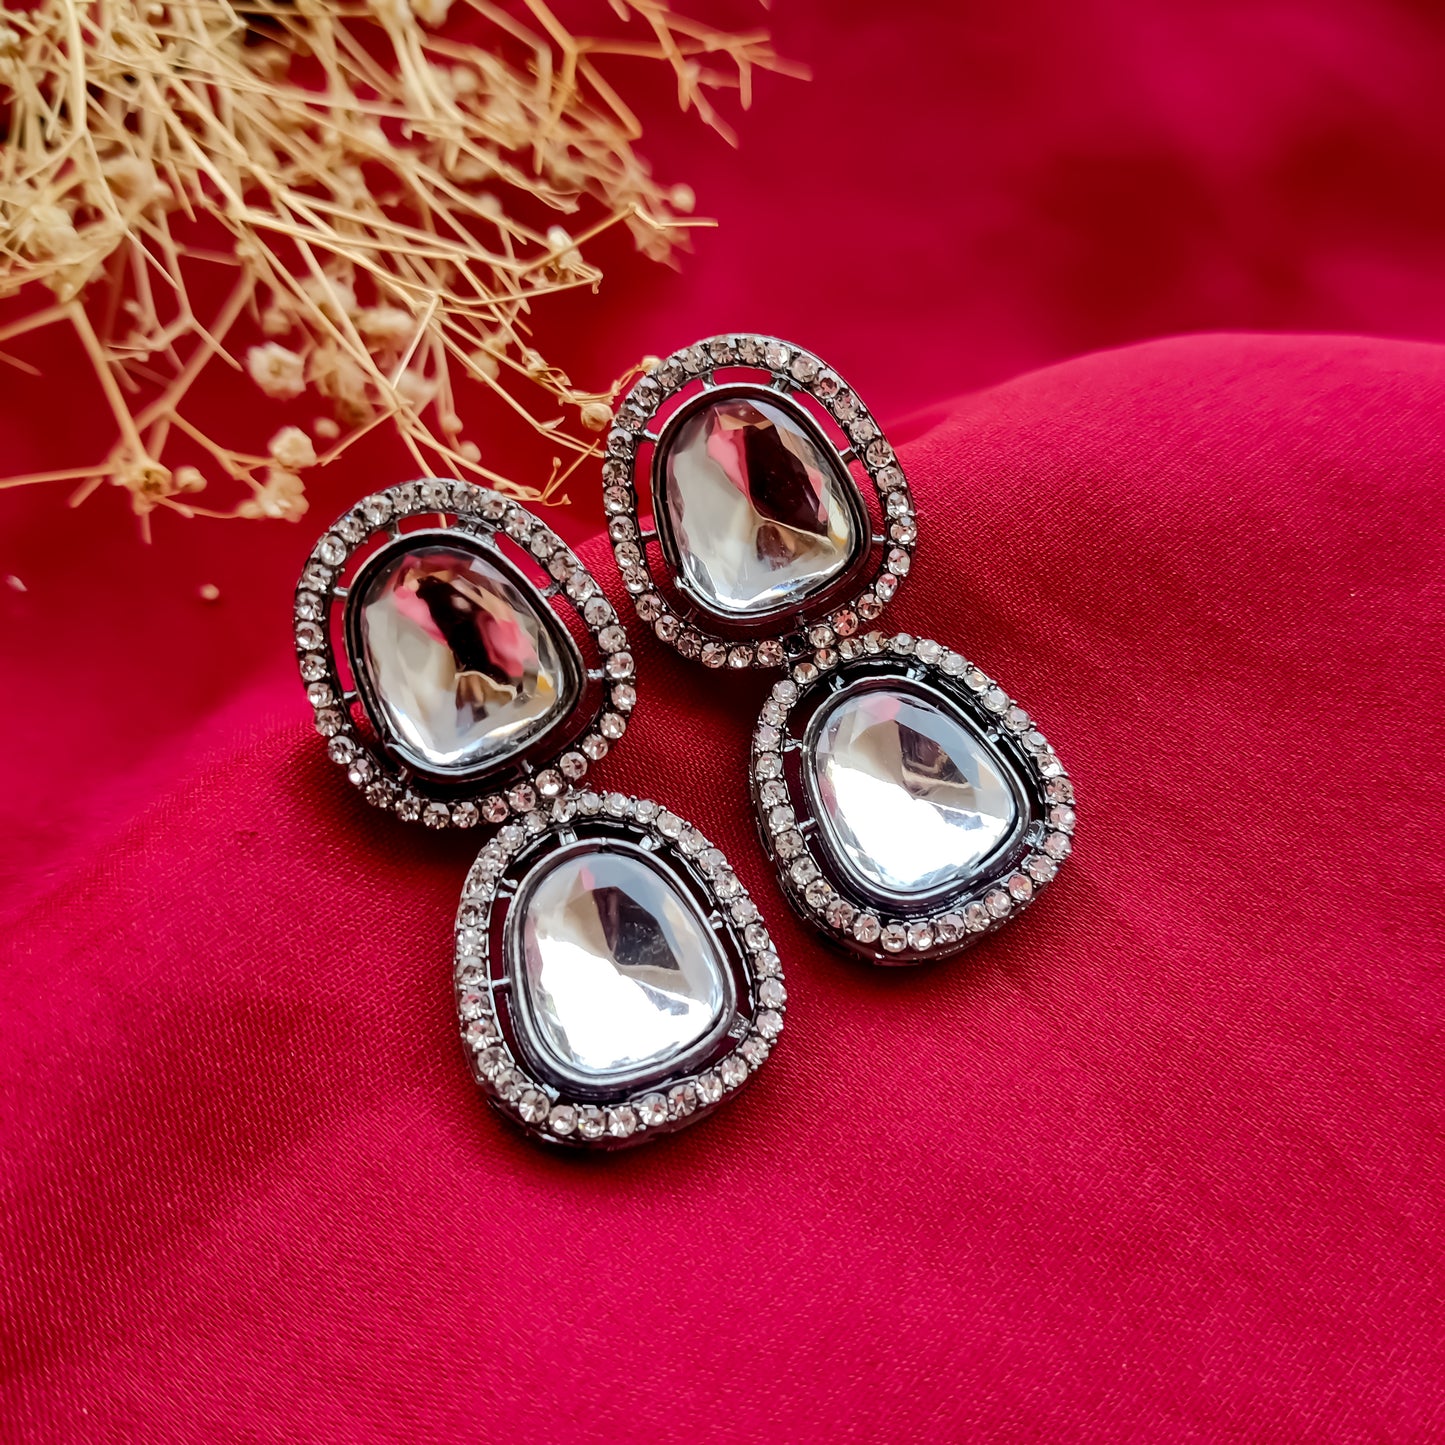 Black Metal Polki Look Alike Necklace Set with Earrings